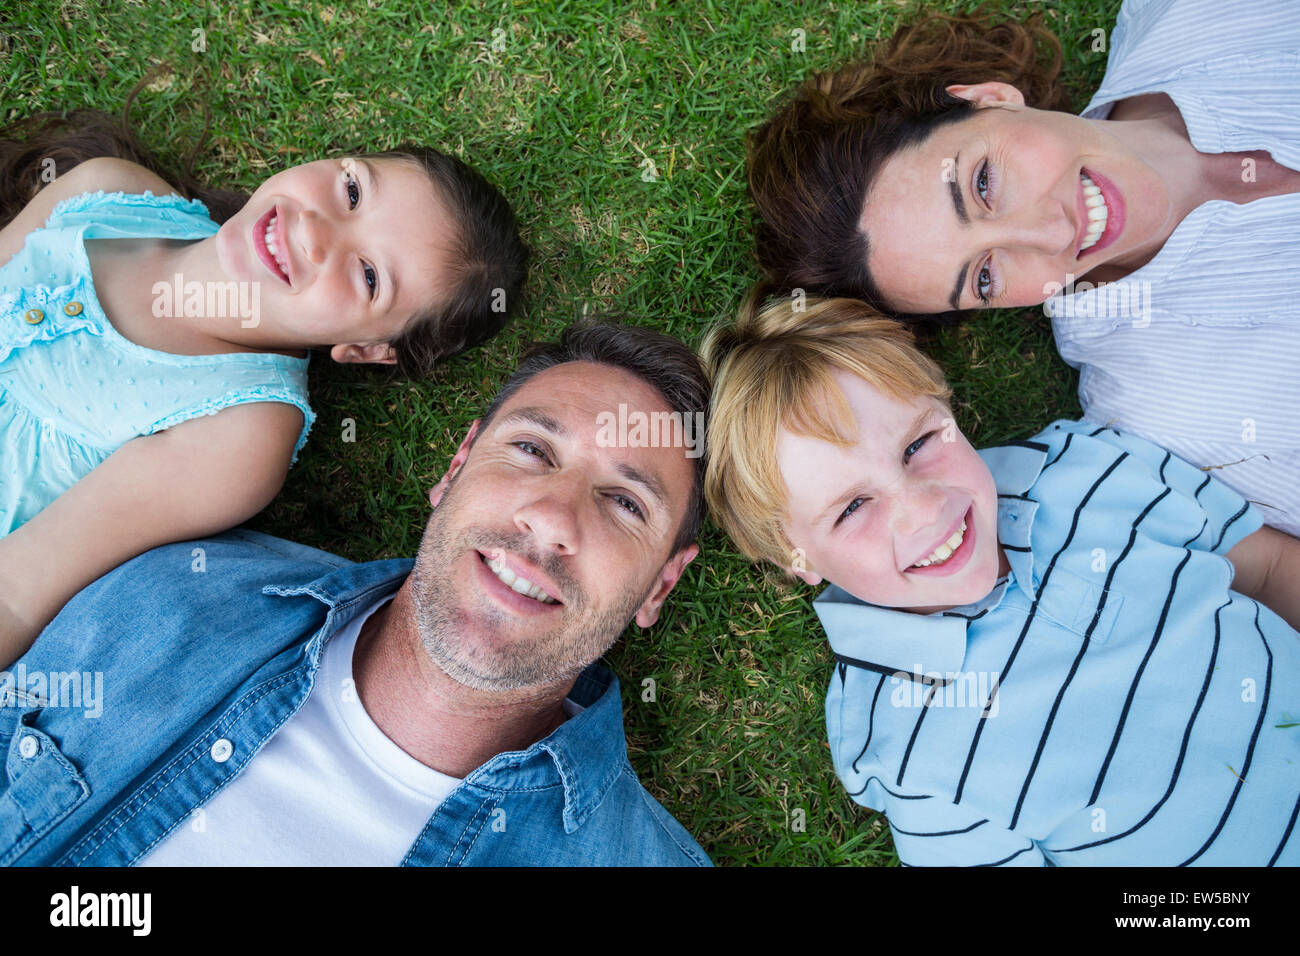 Glückliche Familie im Park zusammen Stockfoto